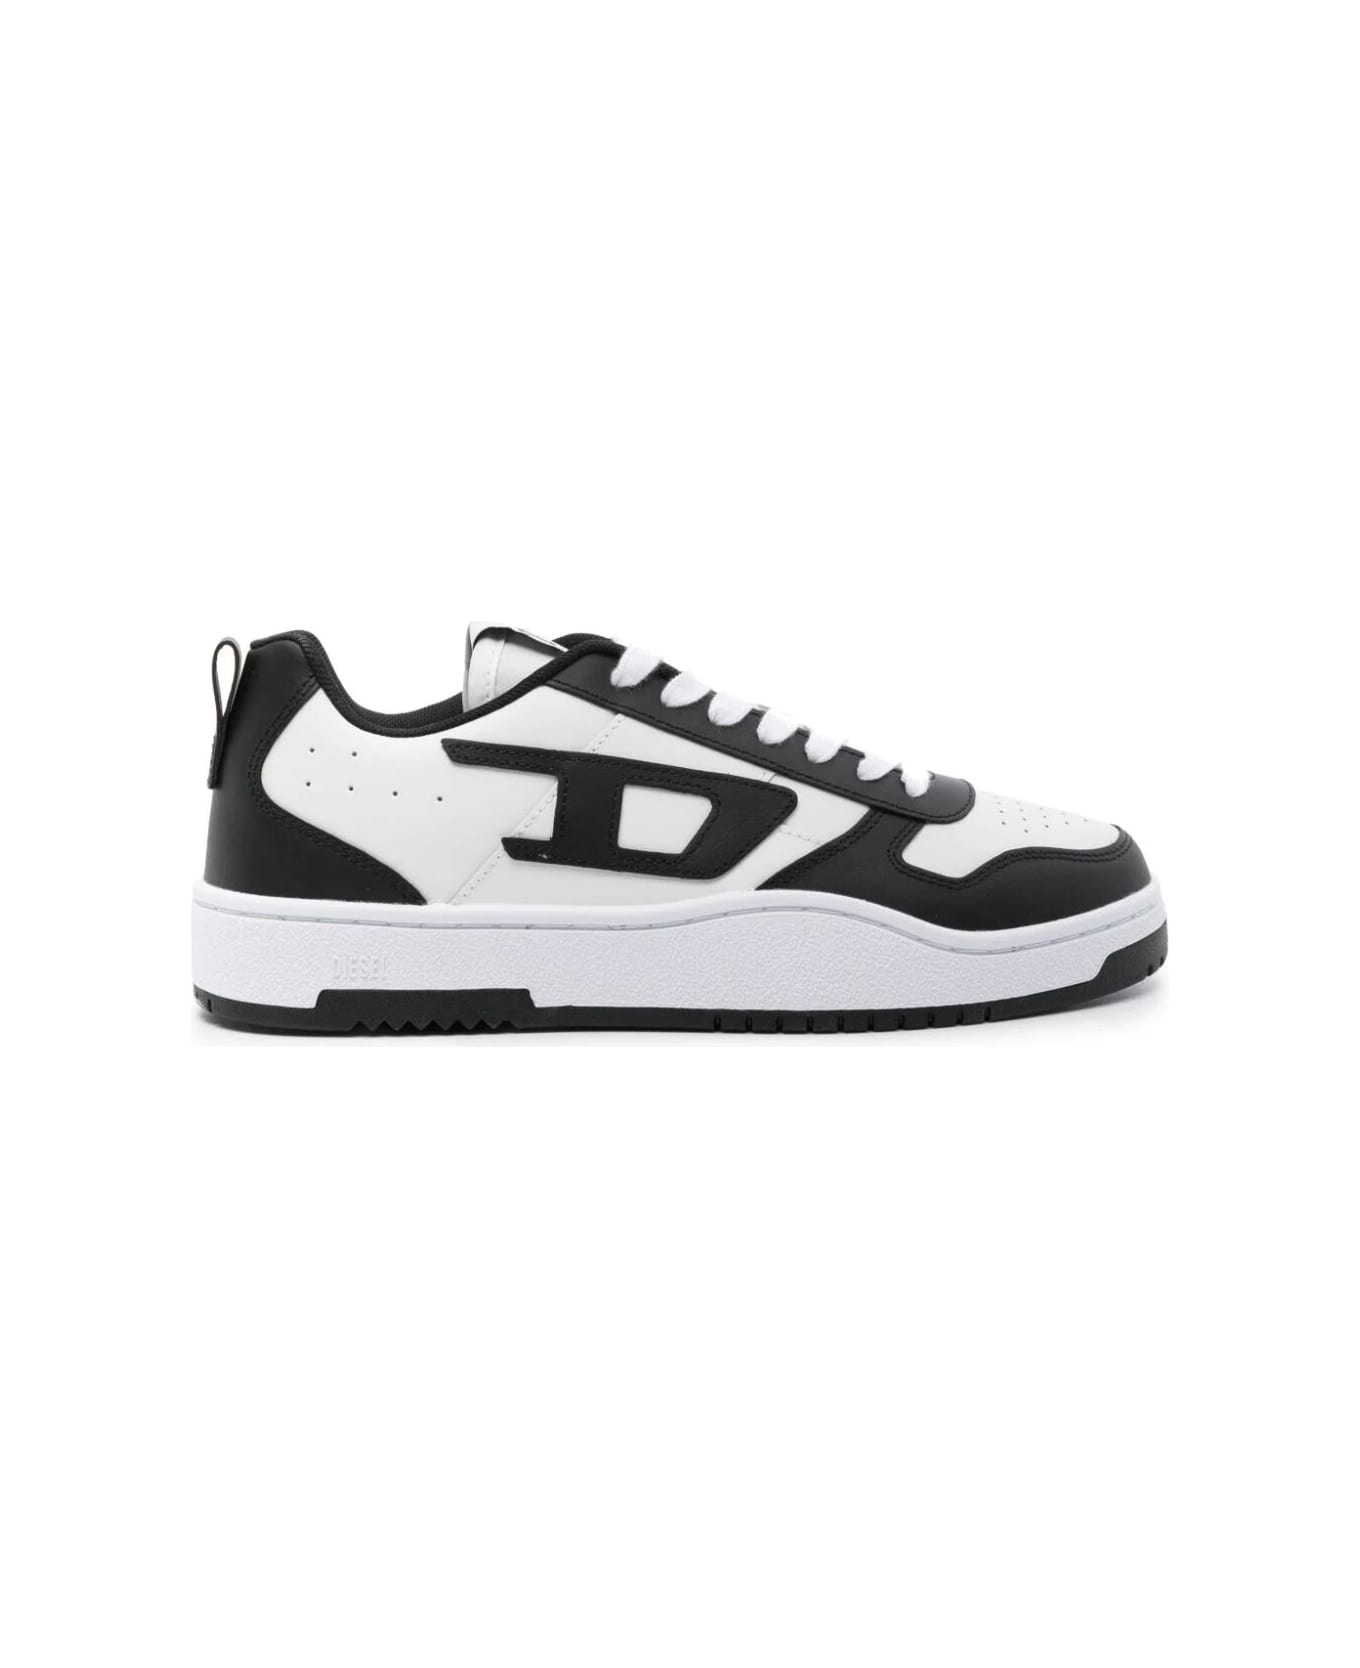 Diesel Ukiyo V2 Low Sneakers - White Black スニーカー